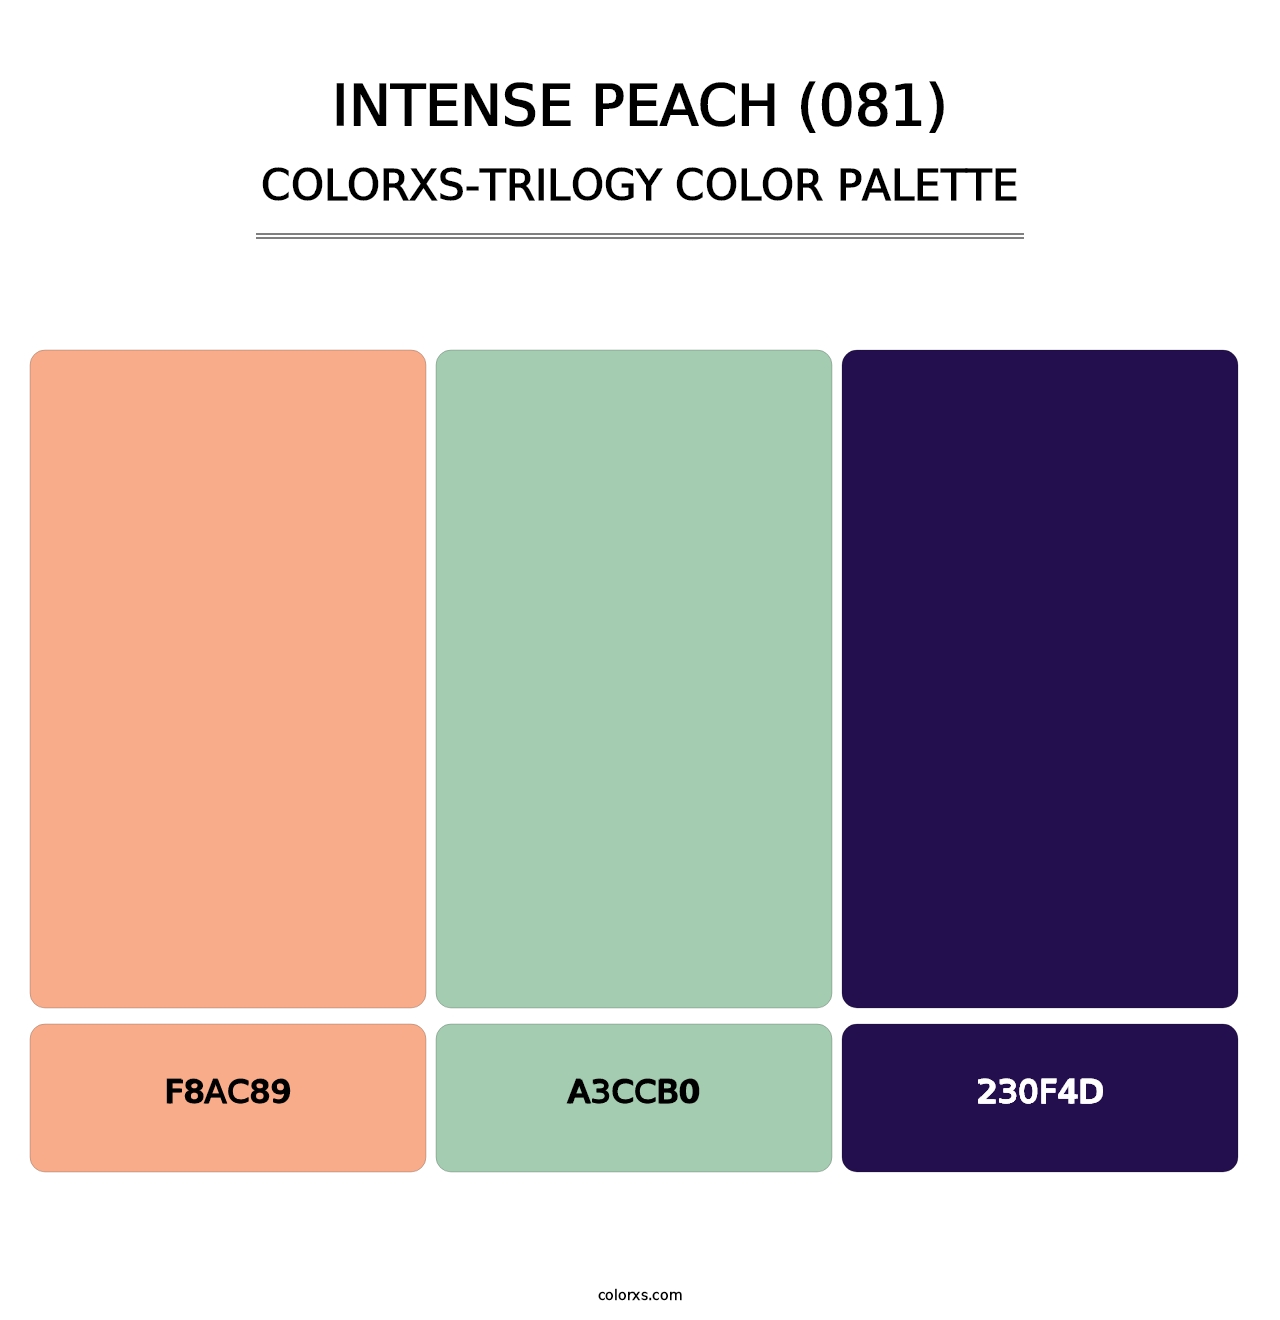 Intense Peach (081) - Colorxs Trilogy Palette